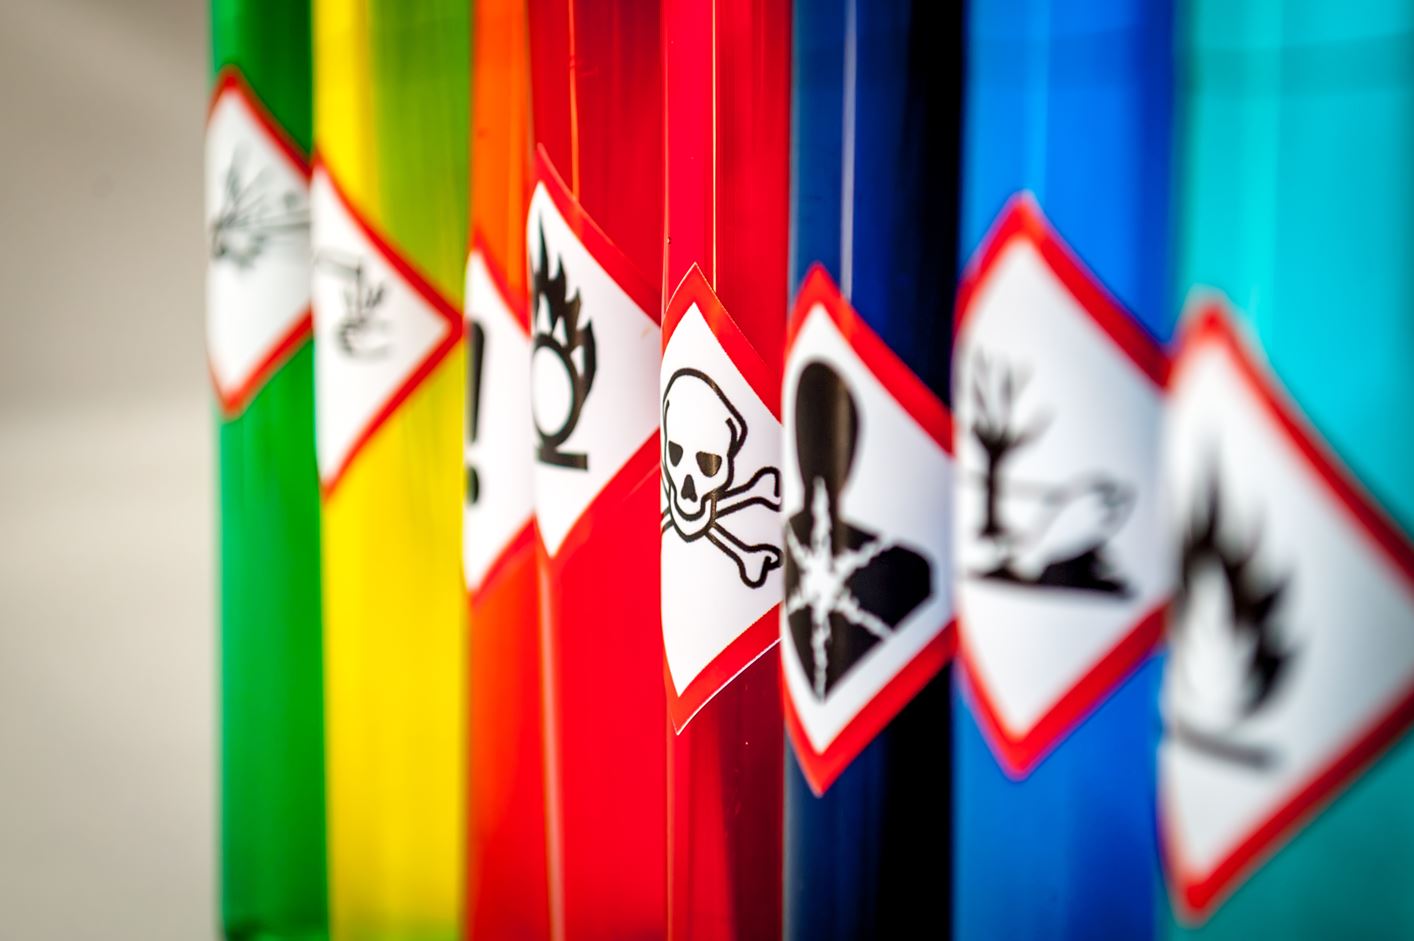 gevaarlijke stoffen symbolen